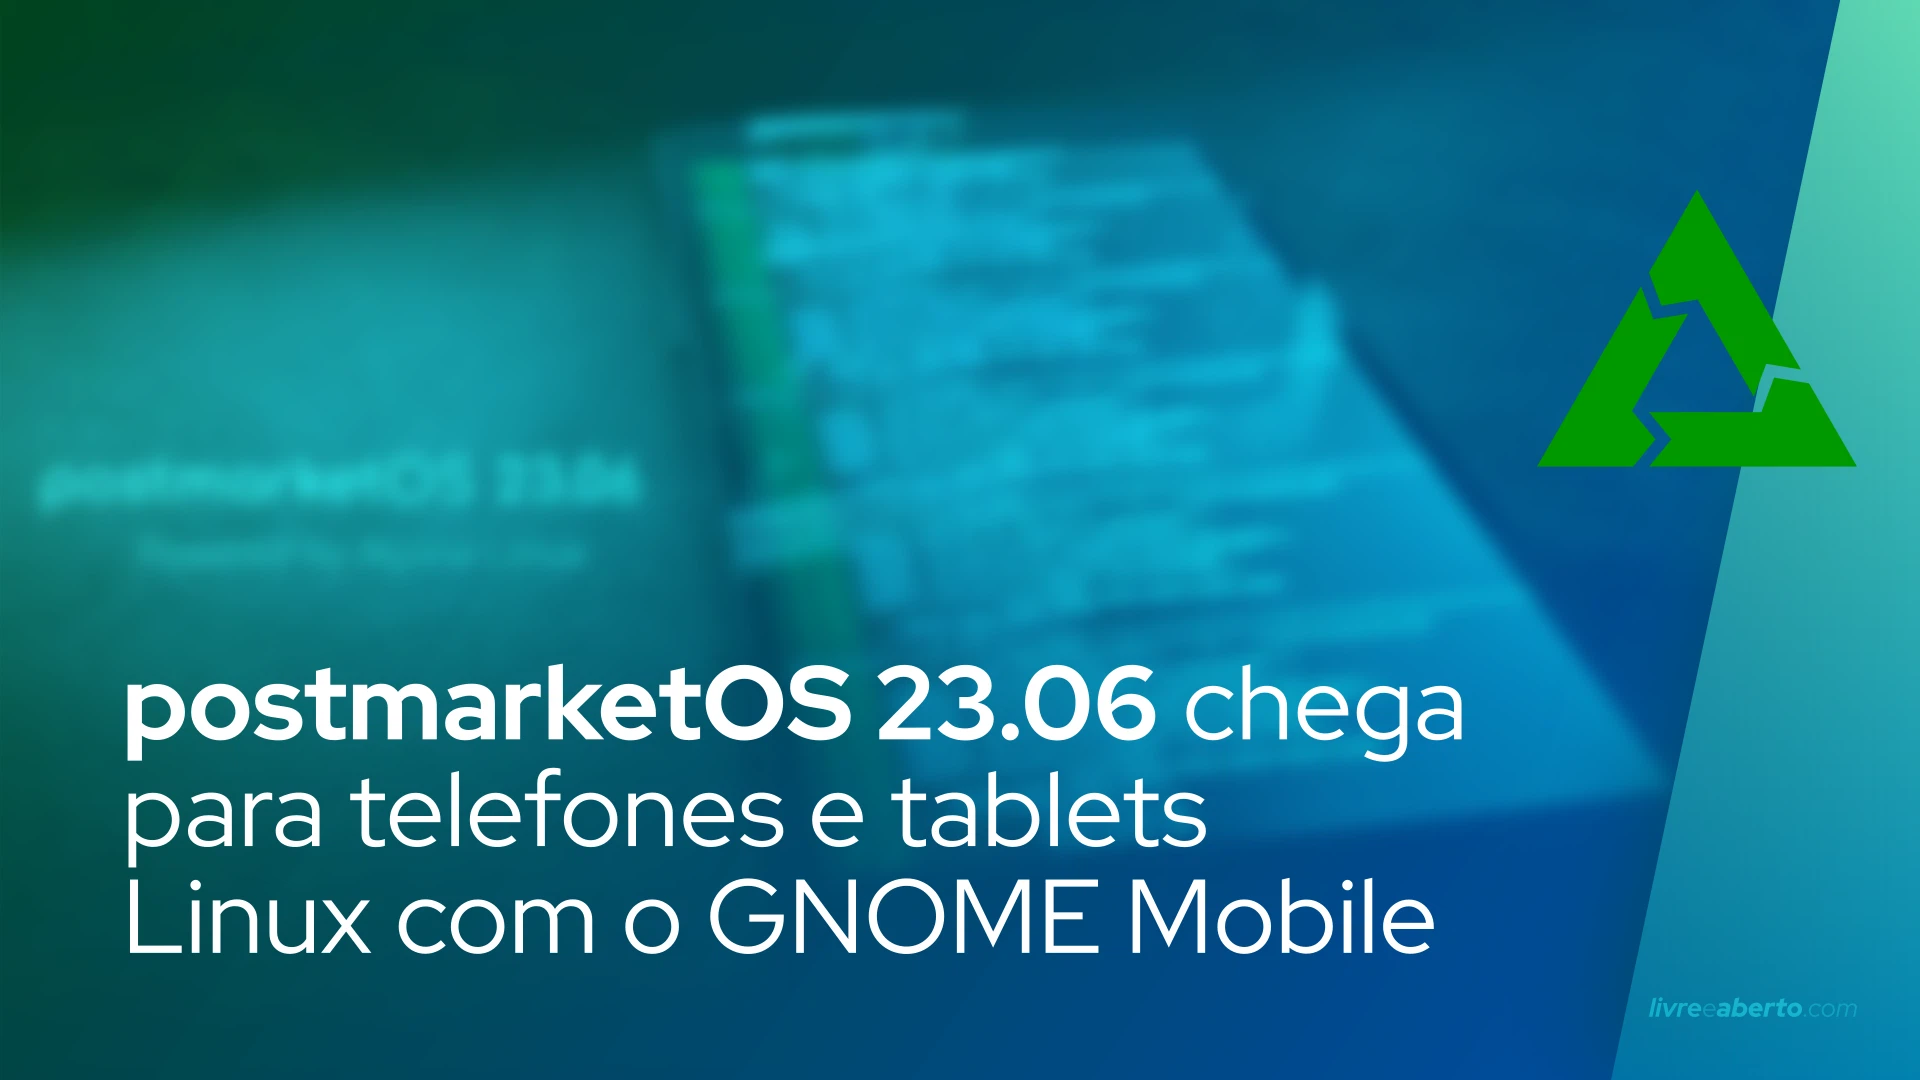 postmarketOS 23.06 chega para telefones e tablets Linux com o GNOME Mobile